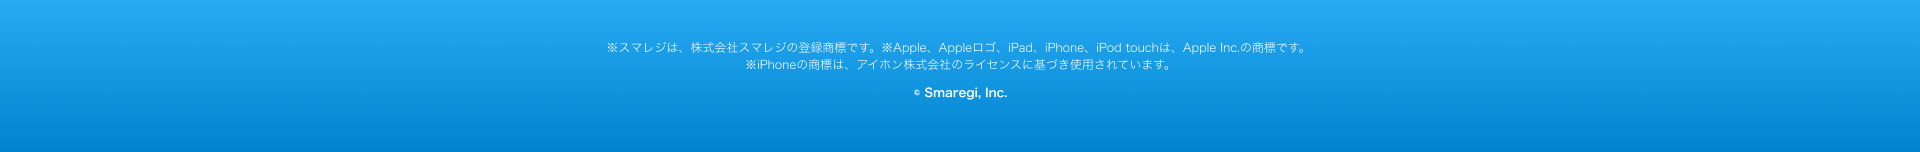 ※スマレジは、株式会社スマレジの登録商標です。 ※Apple、 Appleロゴ、iPad、iPhone、iPod touchは、 Apple Inc. の商標です。 ※iPhoneの商標は、アイホン株式会社のライセンスに基づき使用されています。
© Smaregi, Inc.